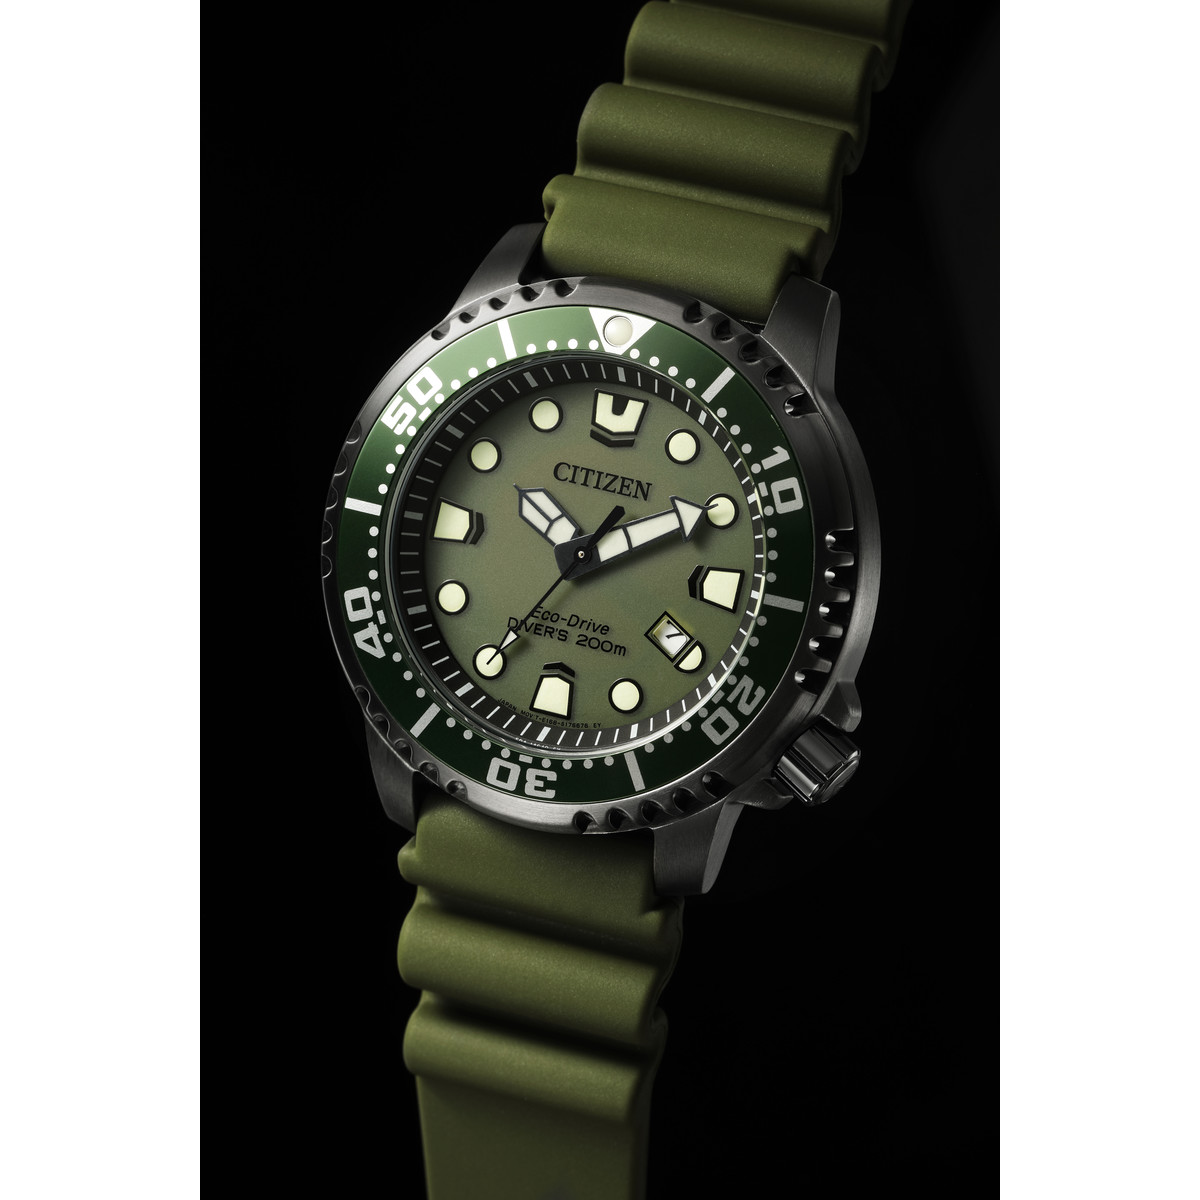 Montre CITIZEN promaster marine homme eco-drive acier bracelet silicone vert olive - vue D1